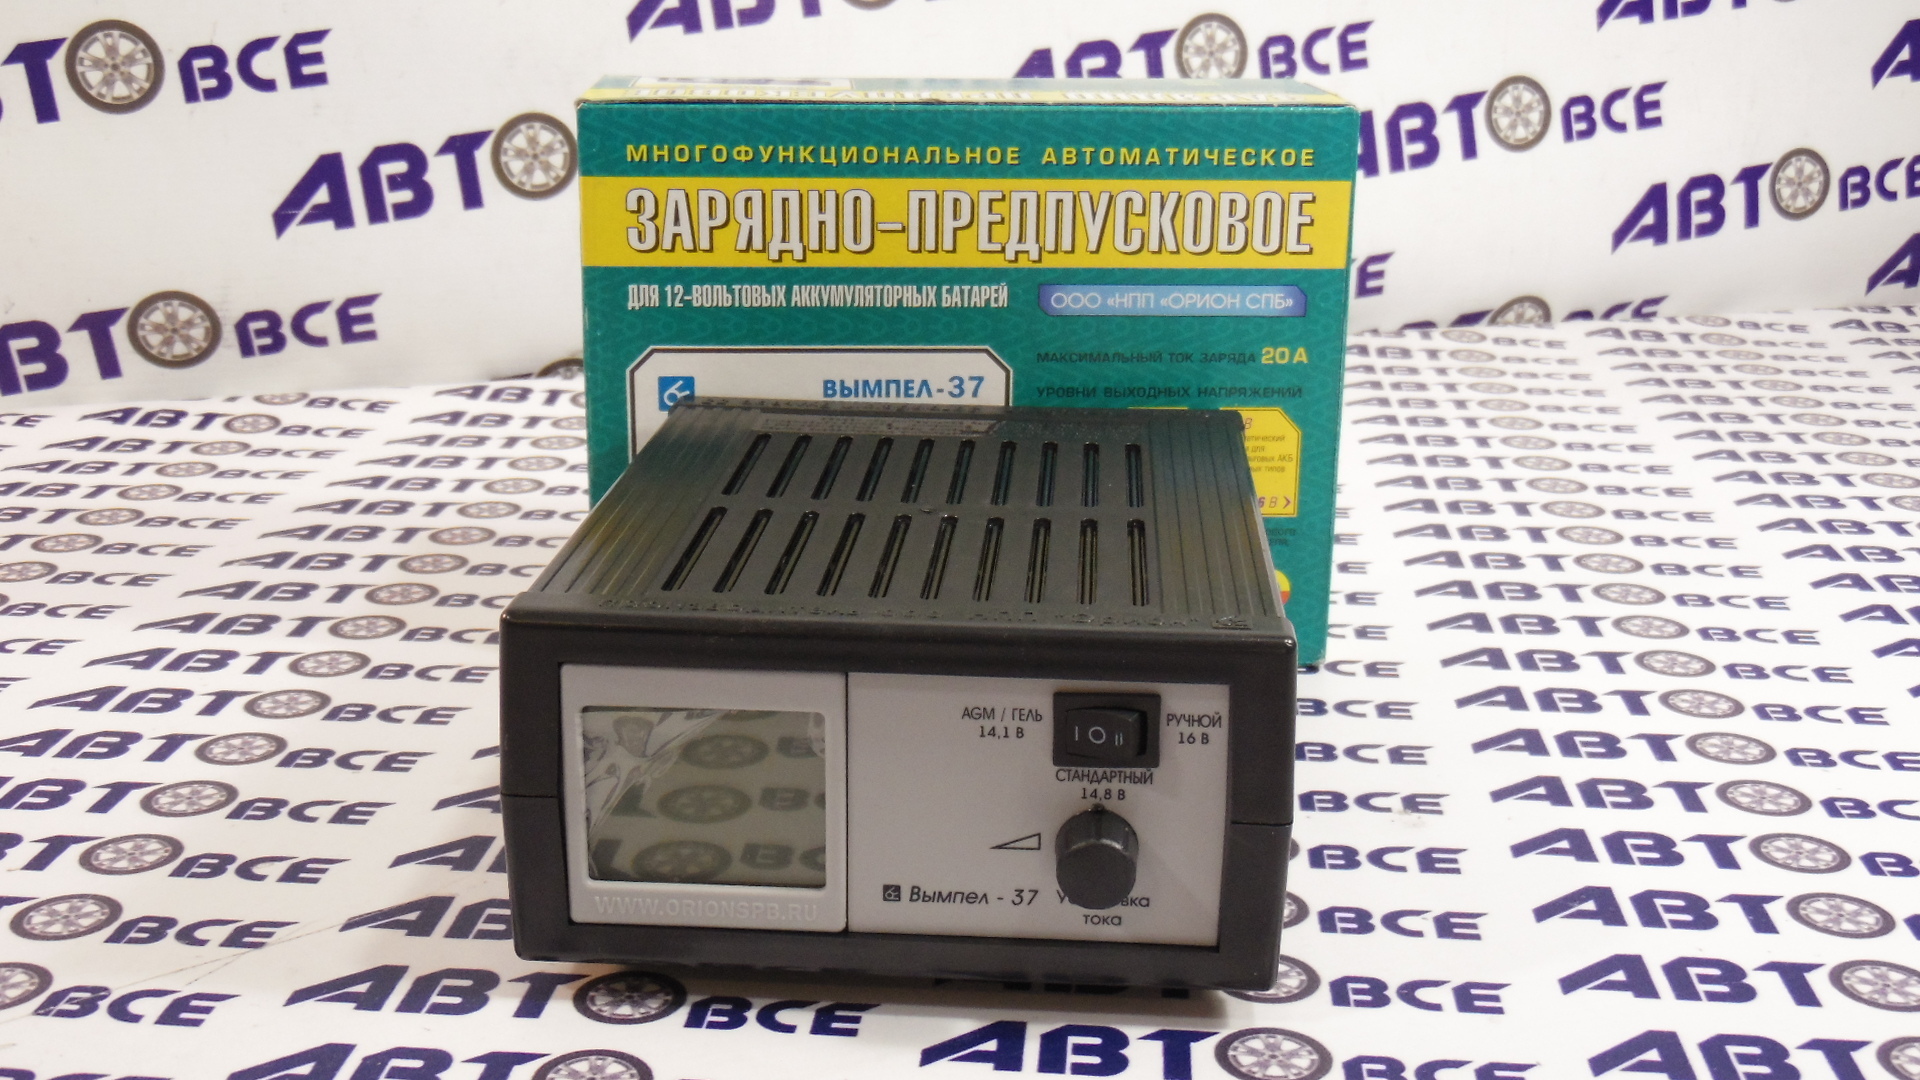 Зарядное устройство для АКБ (зарядно-предпусковое) 12V  0-20А 14.1/18.8/16В сегментный индикатор Вымпел-37